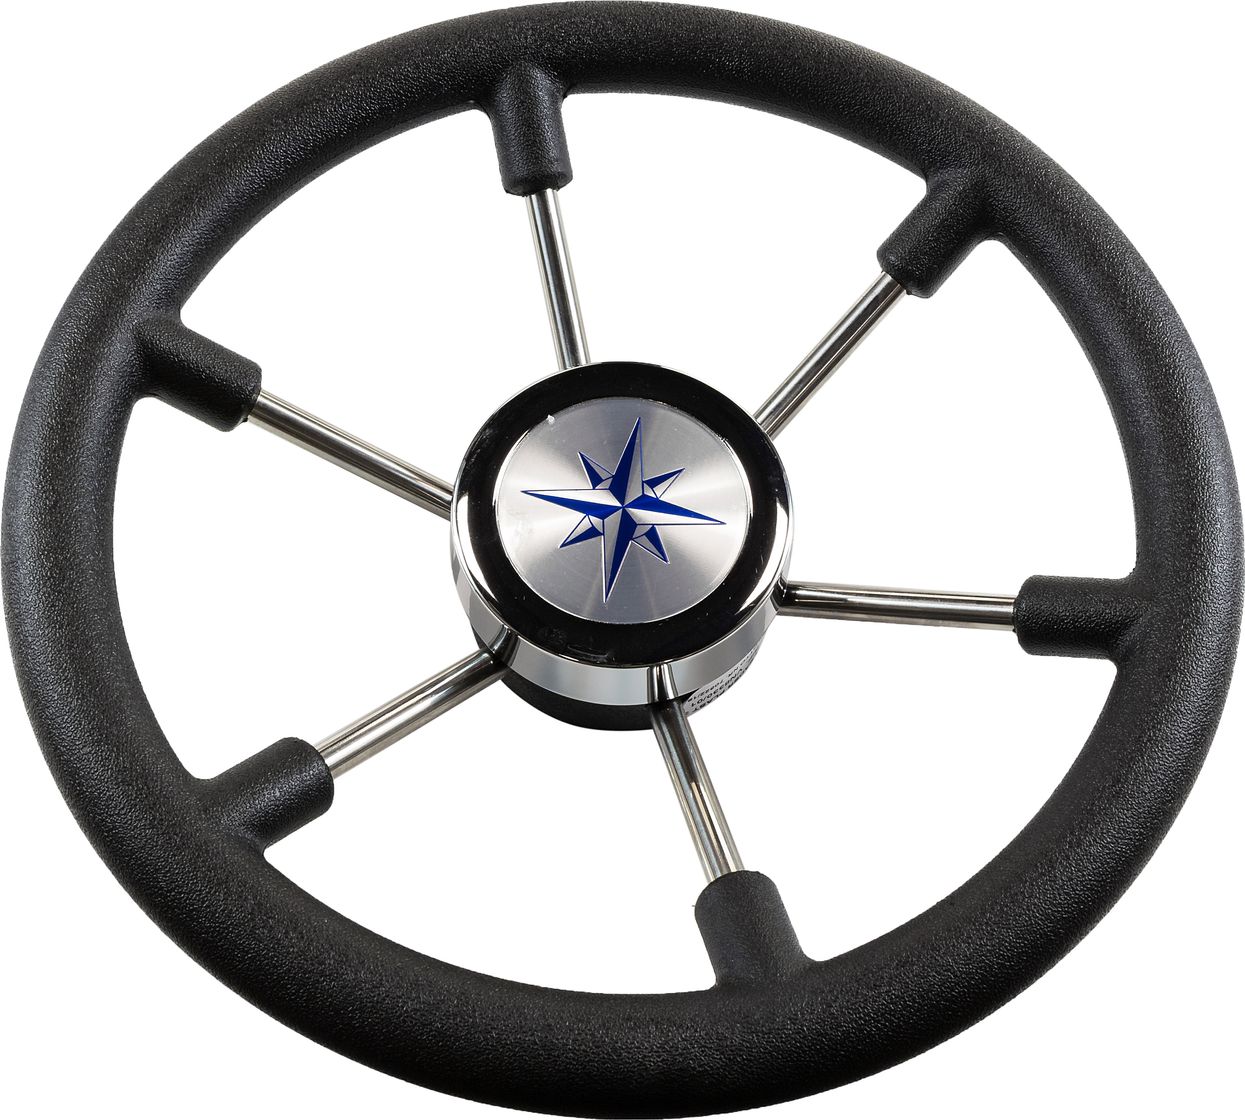 Рулевое колесо LEADER PLAST черный обод серебряные спицы д. 330 мм VN8330-01 рулевое колесо leader plast обод серебряные спицы д 360 мм vn8360 01